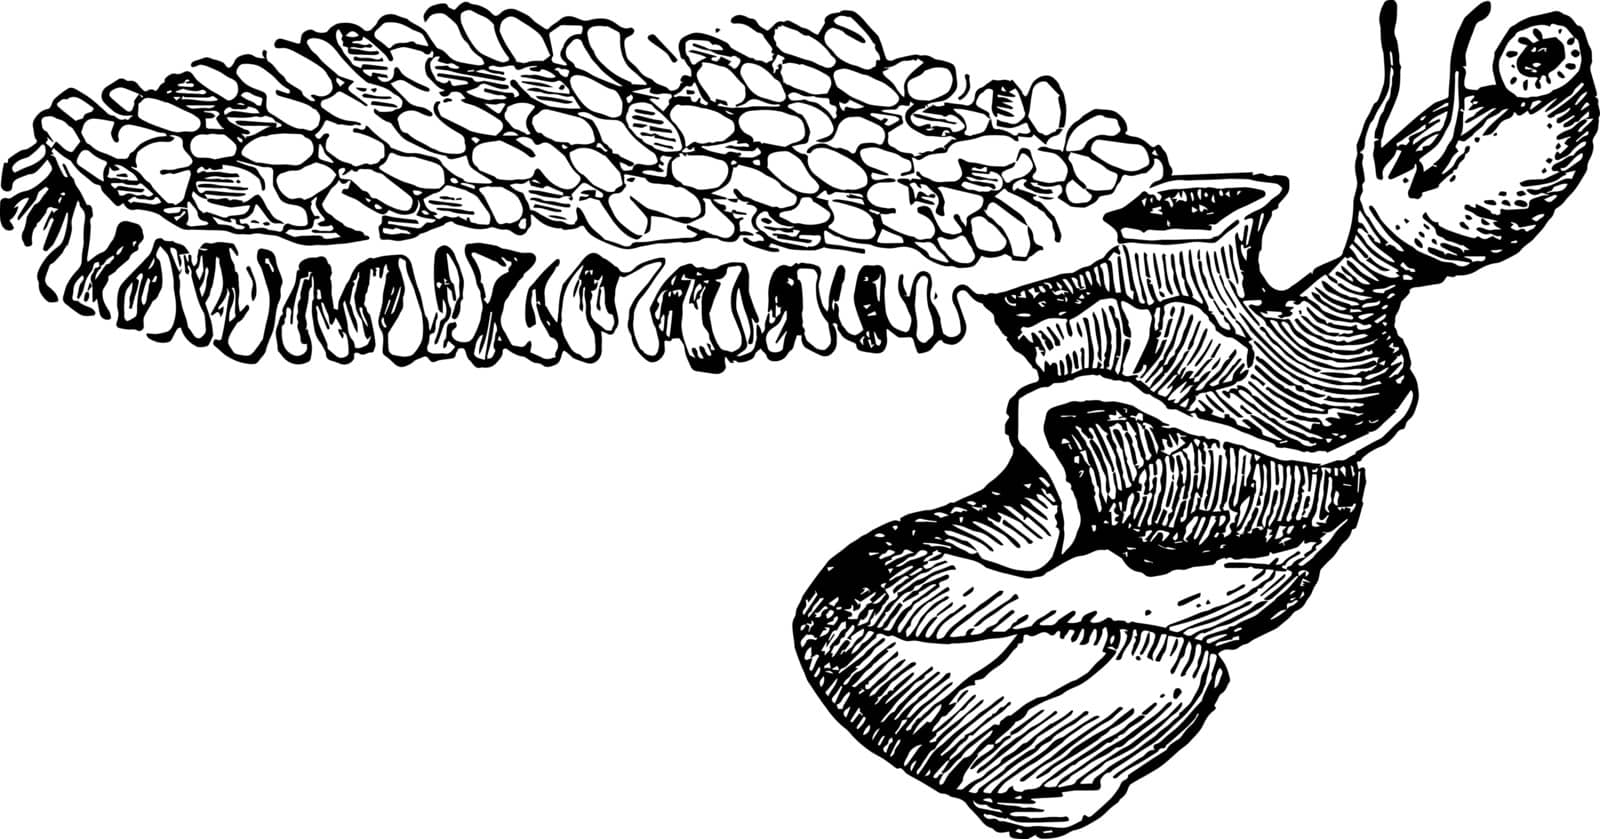 Violet Snail is a floating sea slug, vintage line drawing or engraving illustration.